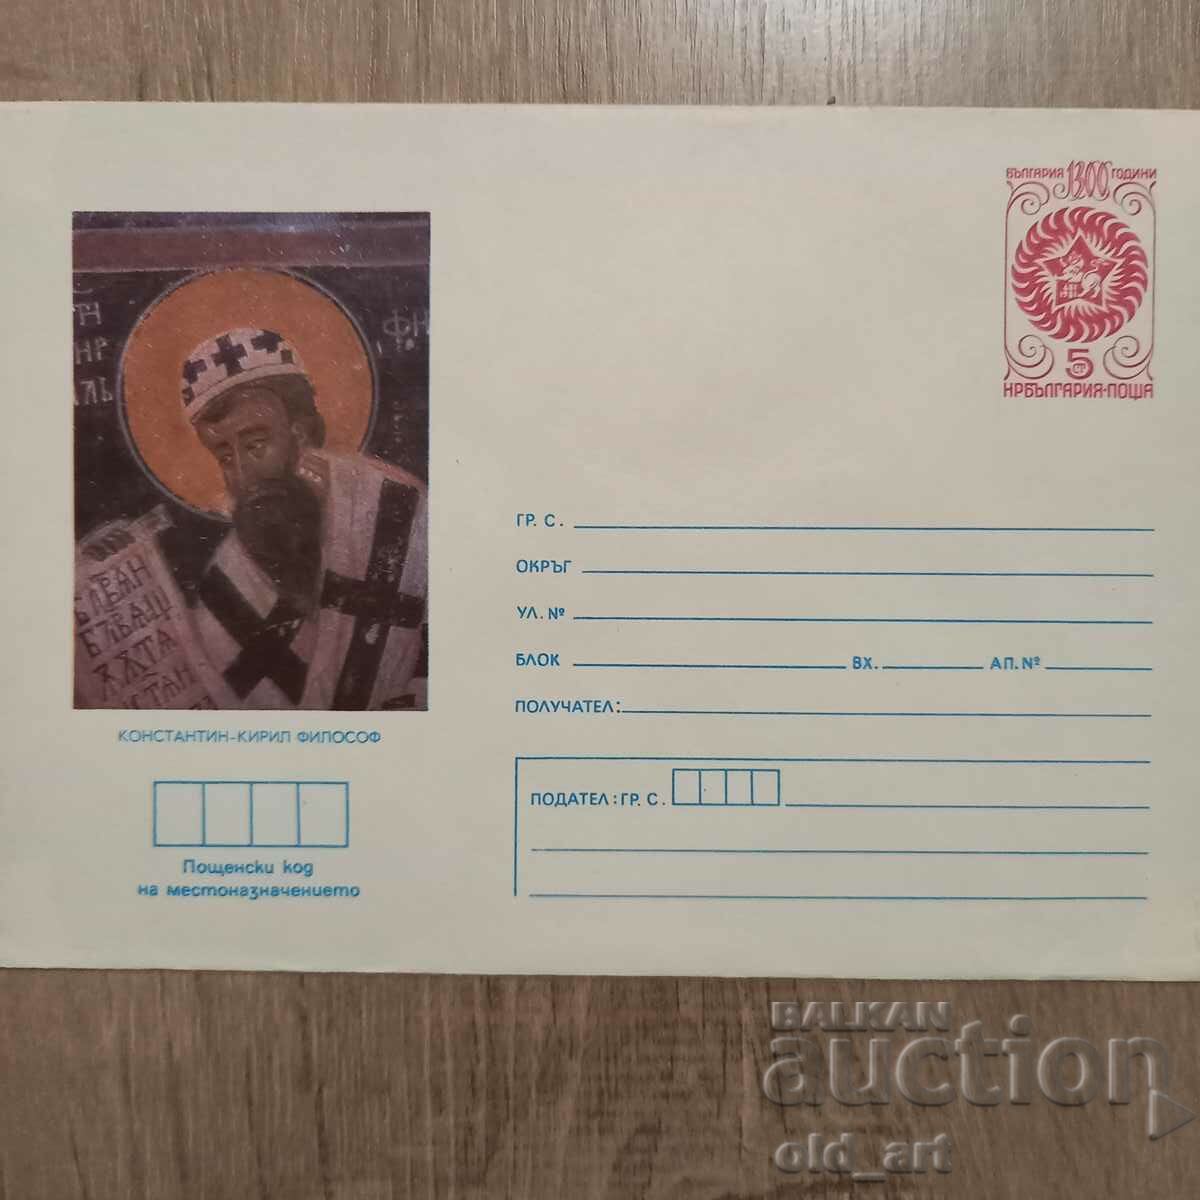 Ταχυδρομικός φάκελος - Κωνσταντίνος Κύριλλος ο Φιλόσοφος